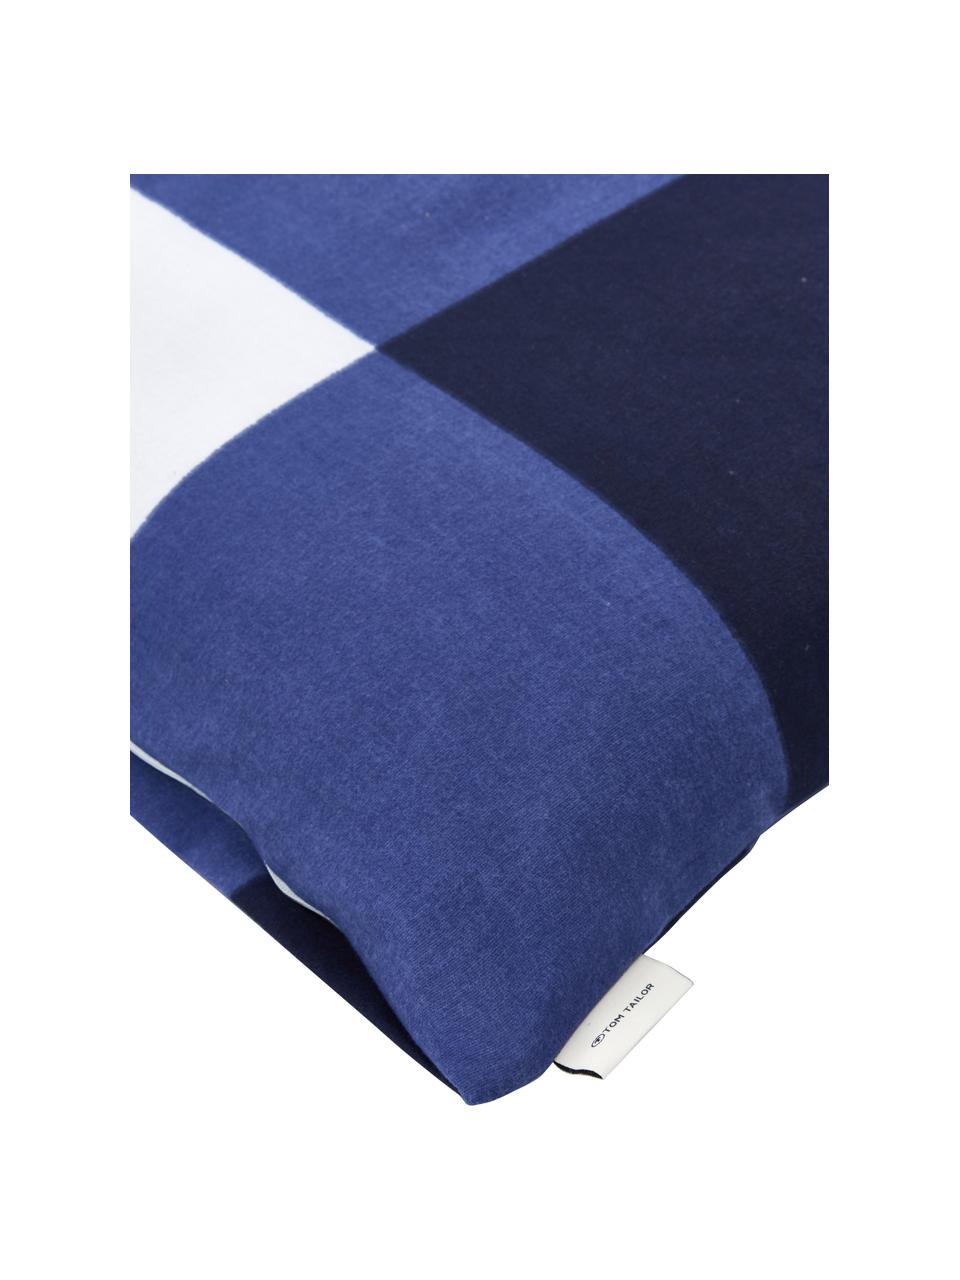 Karierte Flannel-Bettwäsche Cosy in Blau/Weiss, Webart: Flanell Flanell ist ein k, Blau, Weiss, 135 x 200 cm + 1 Kissen 80 x 80 cm